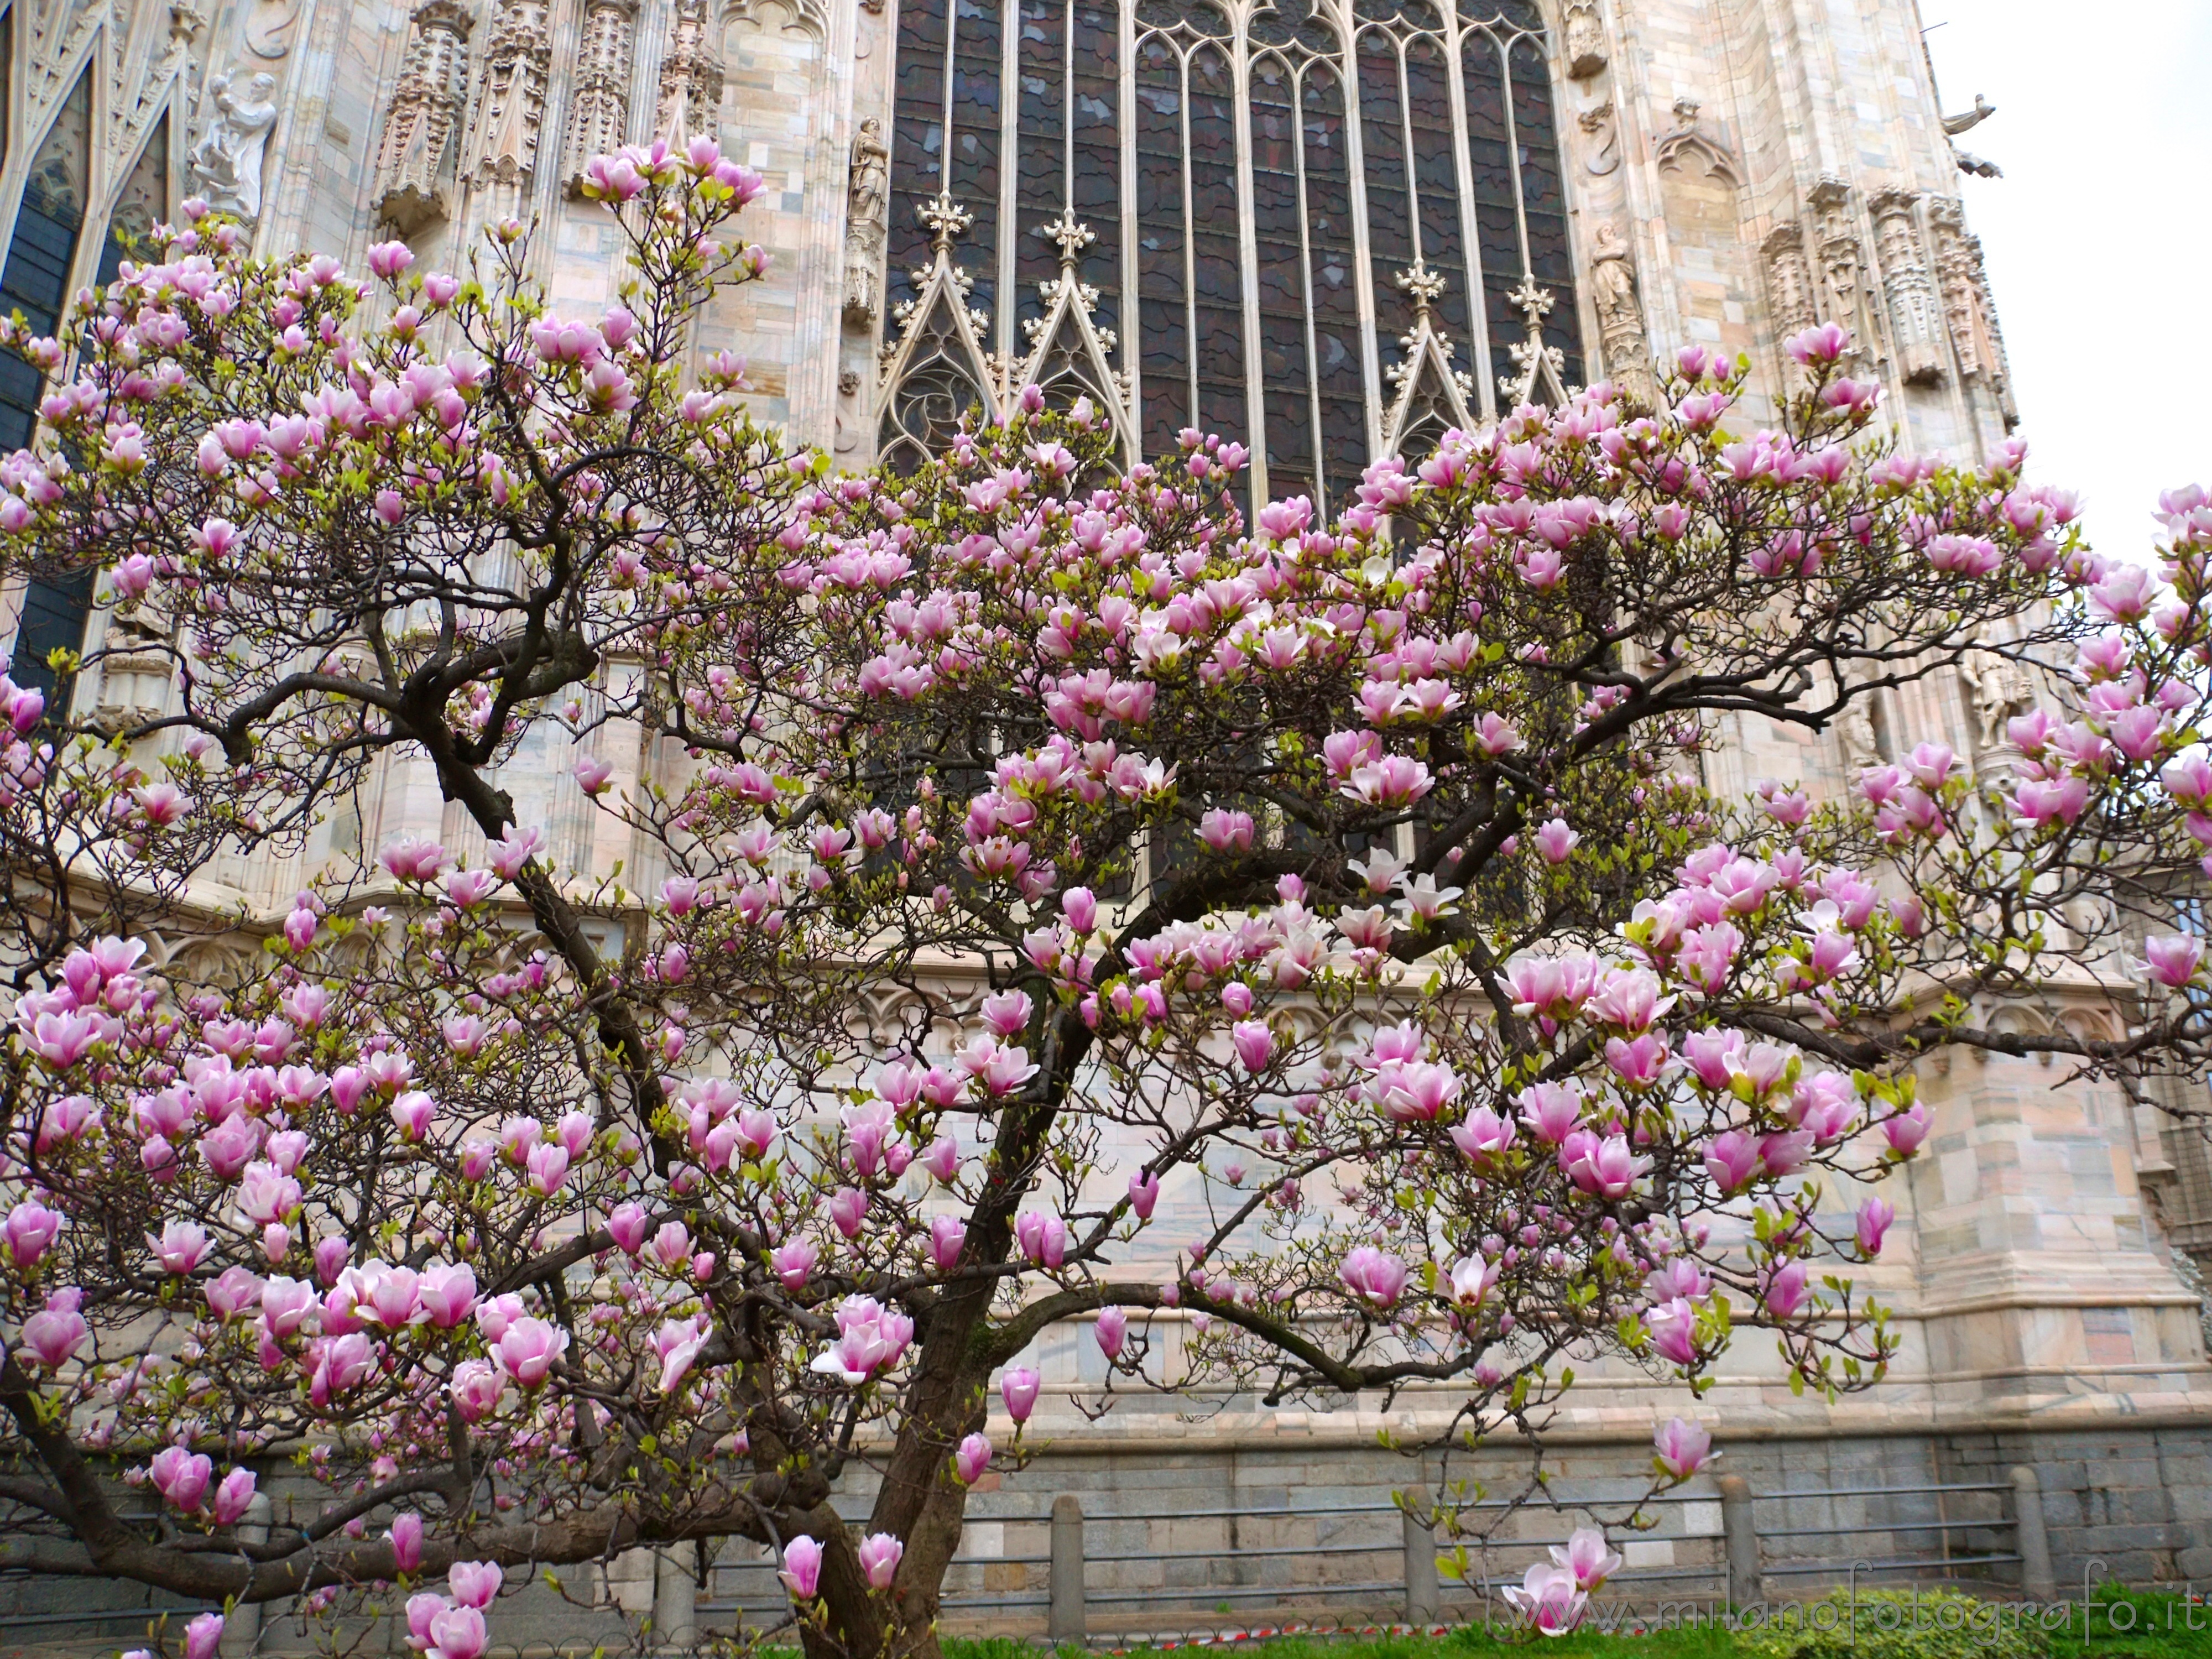 Milano: La magnolia rosa dietro al Duomo in fiore - Milano